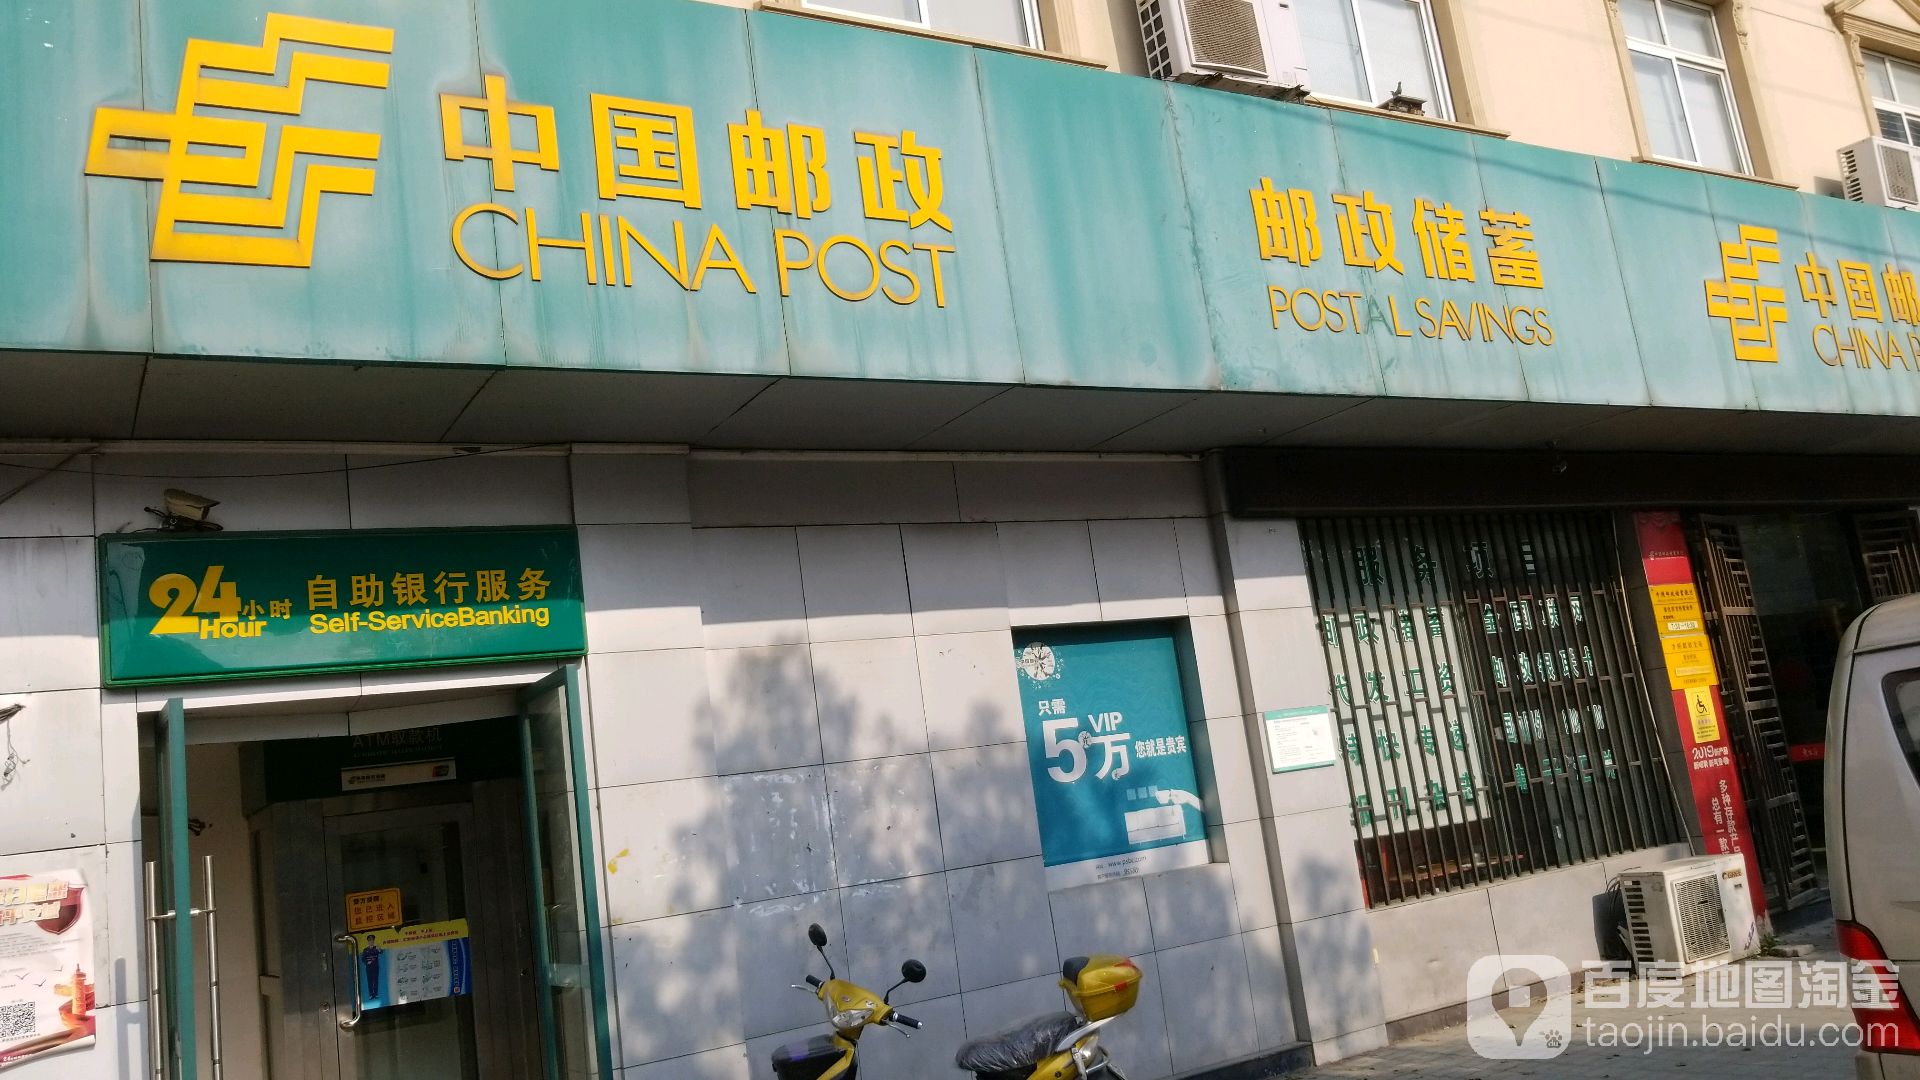 中國郵政儲蓄銀行24小時自助銀行(方橋郵政儲蓄所)